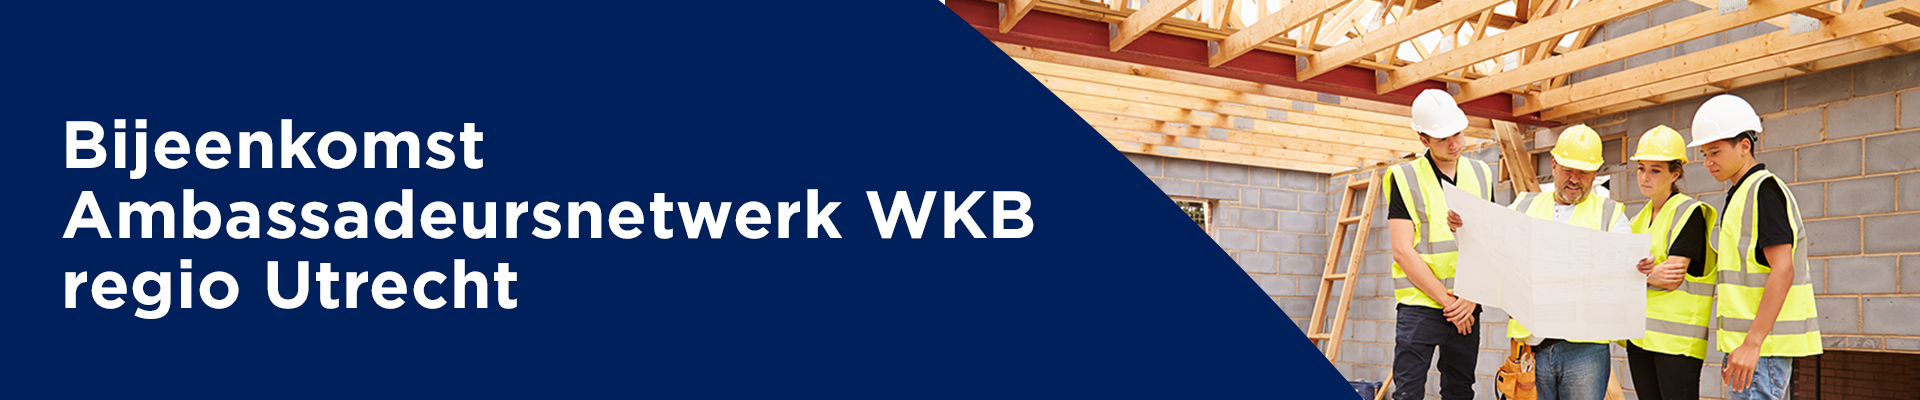 Bijeenkomst Ambassadeursnetwerk WKB regio Utrecht